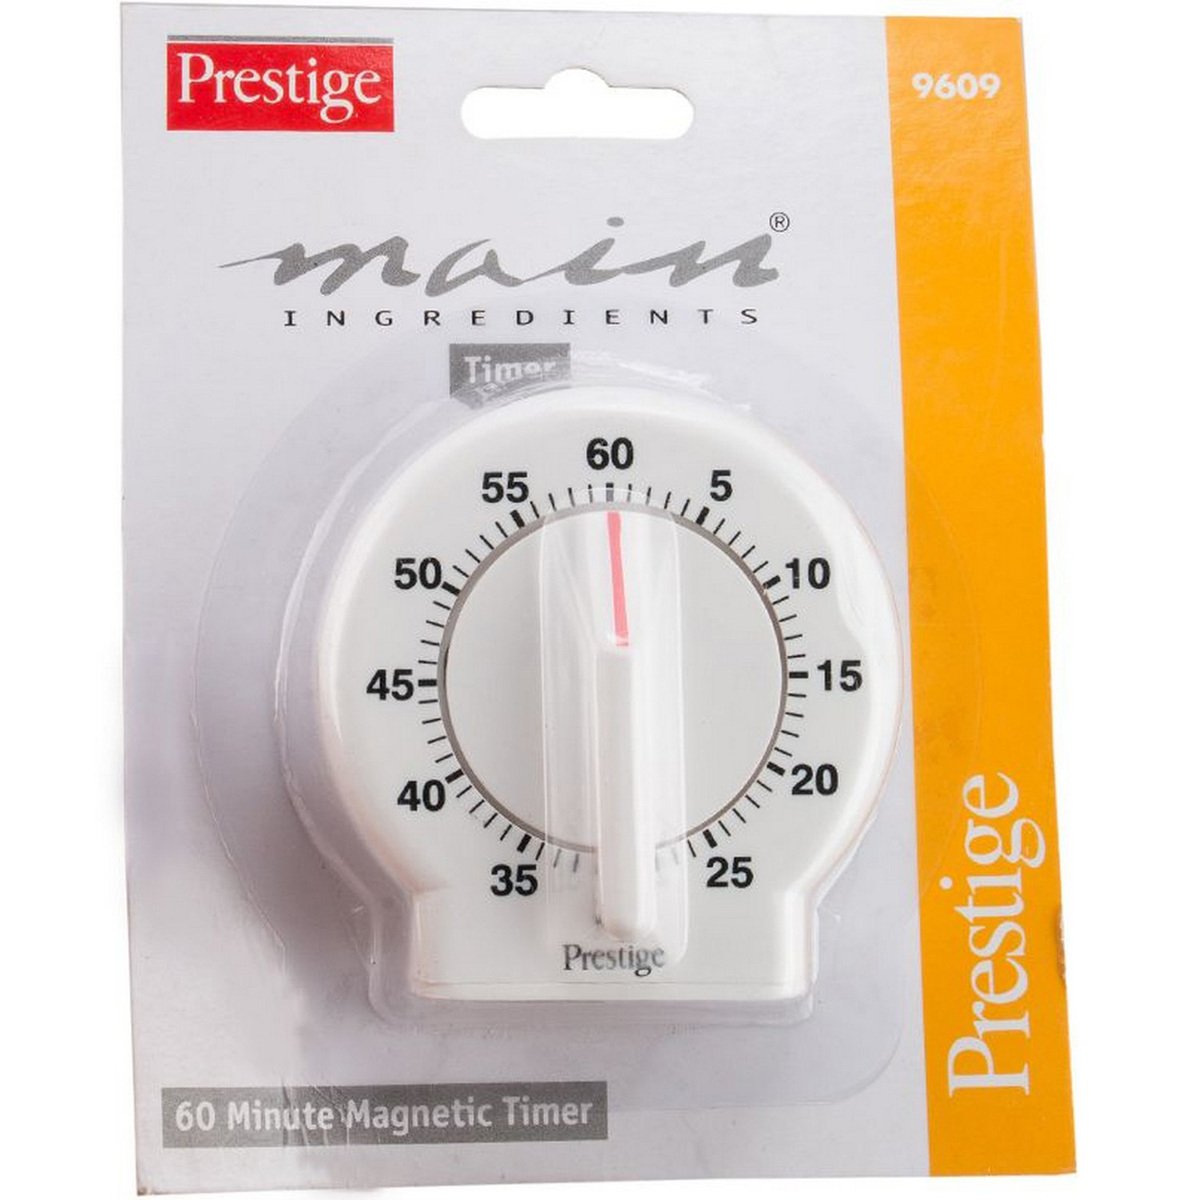 Prestige Mechanical Timer 9609